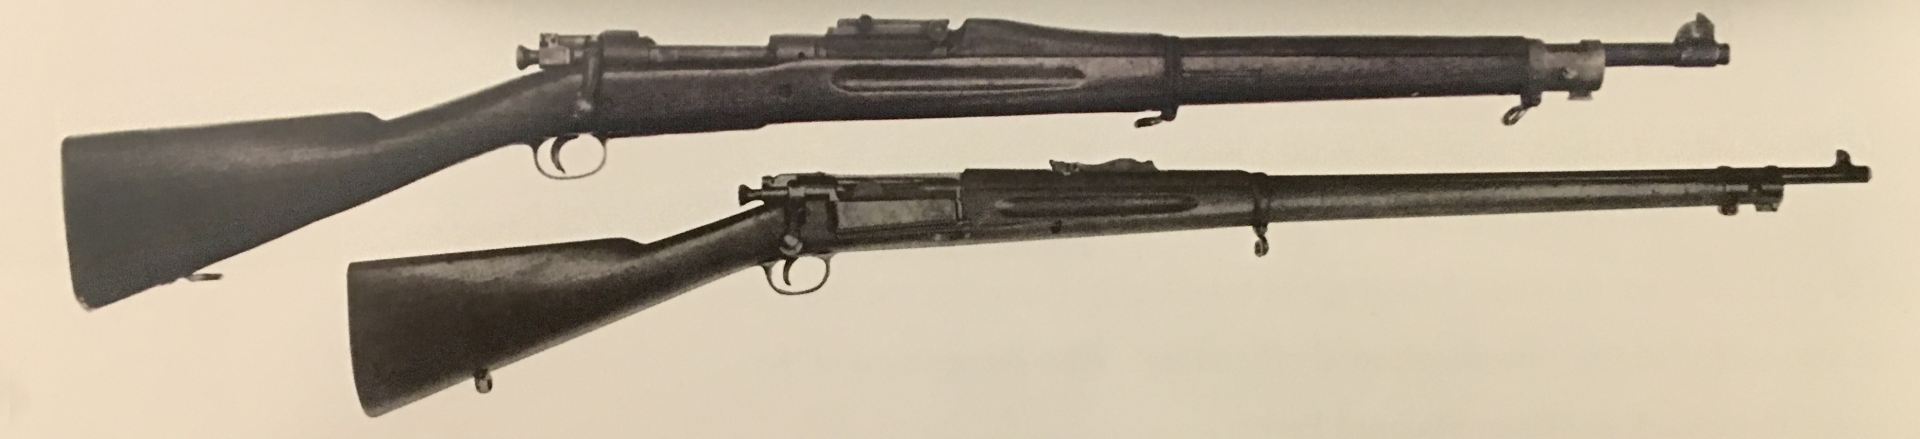 Krag and Model 1903 rifles